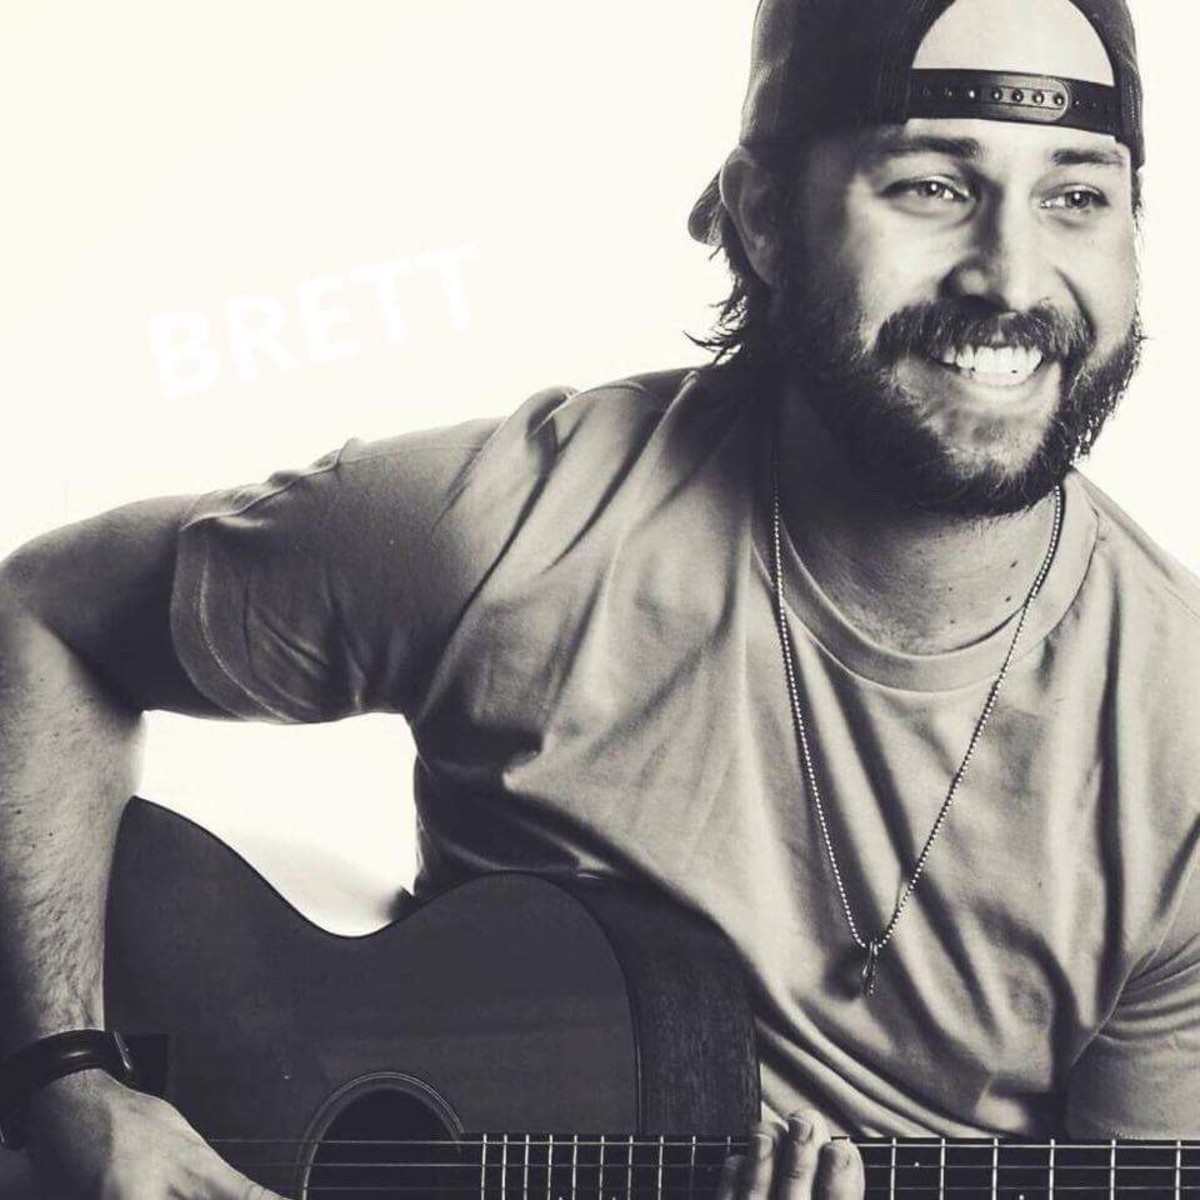 Meet Brett Stafford Smith, Nashville Recording Artist